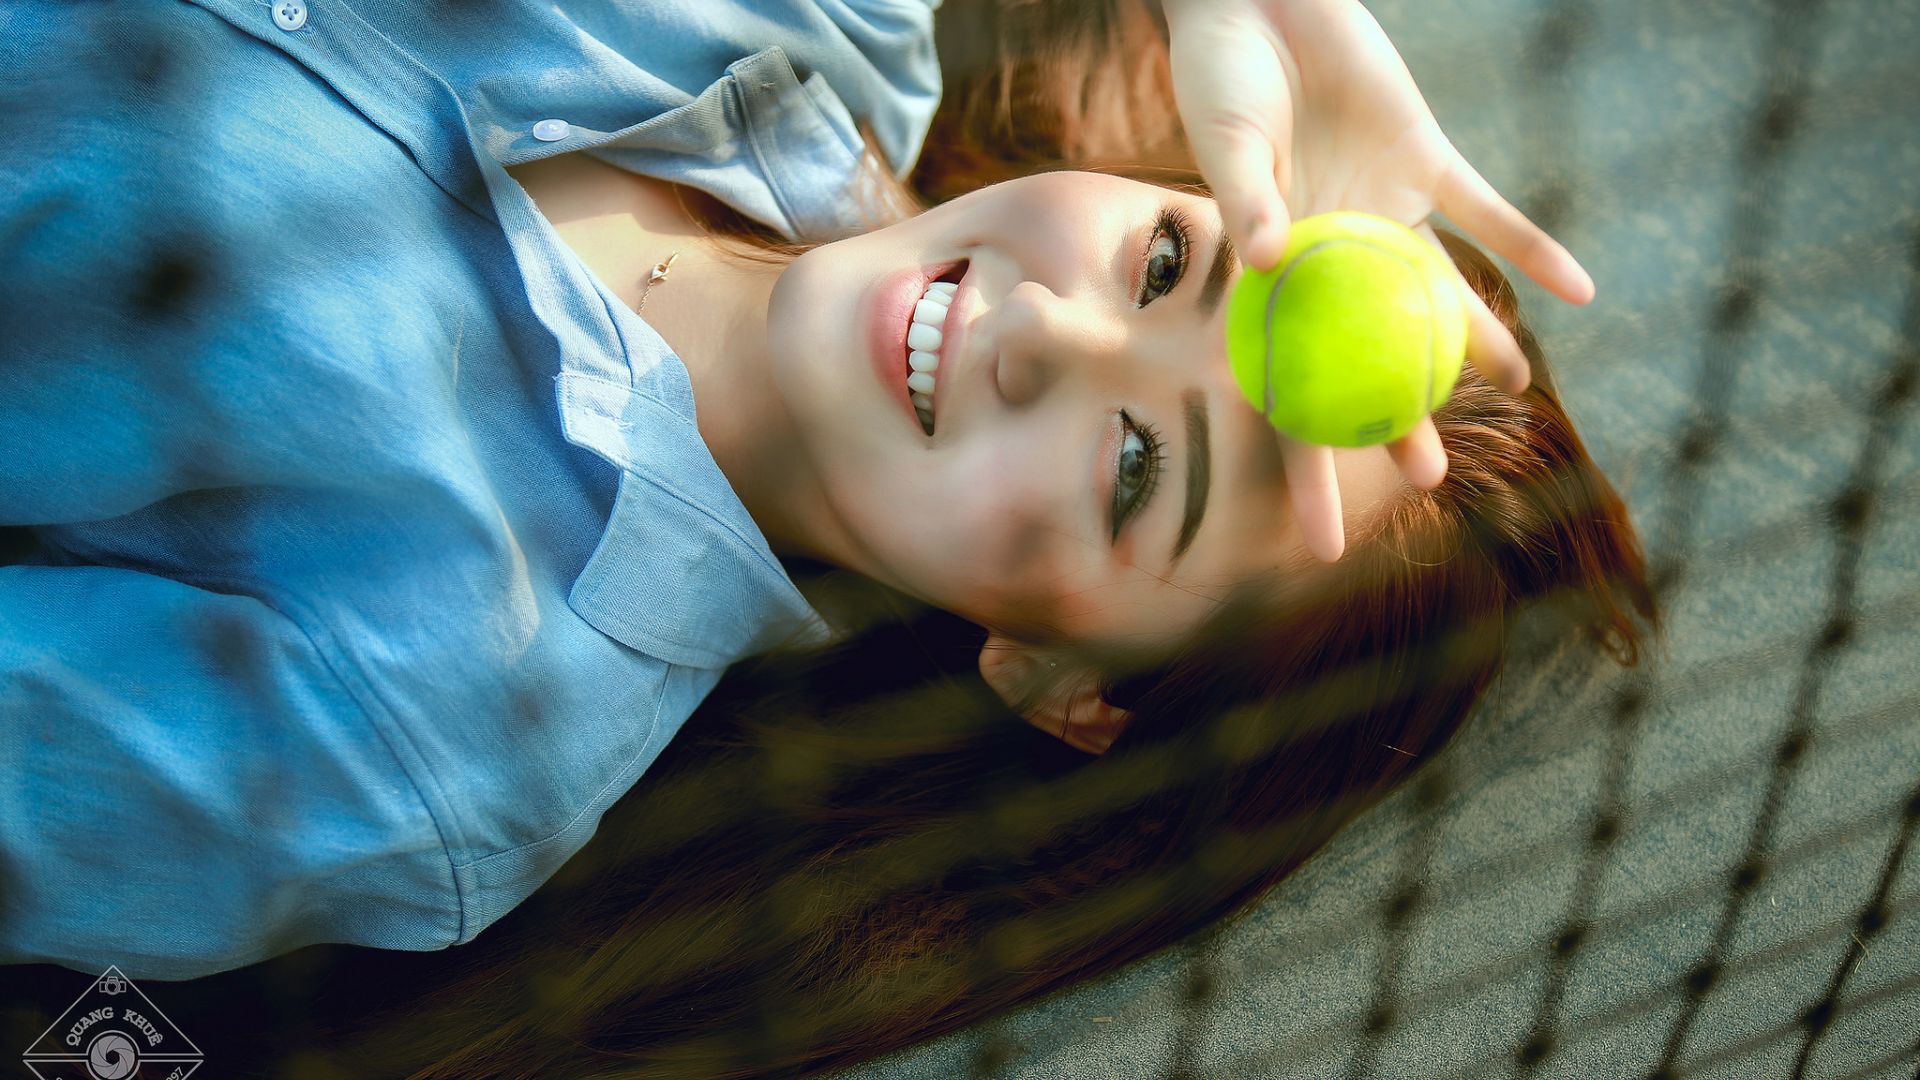 Wallpaper Smile, Asian model, tennis ball